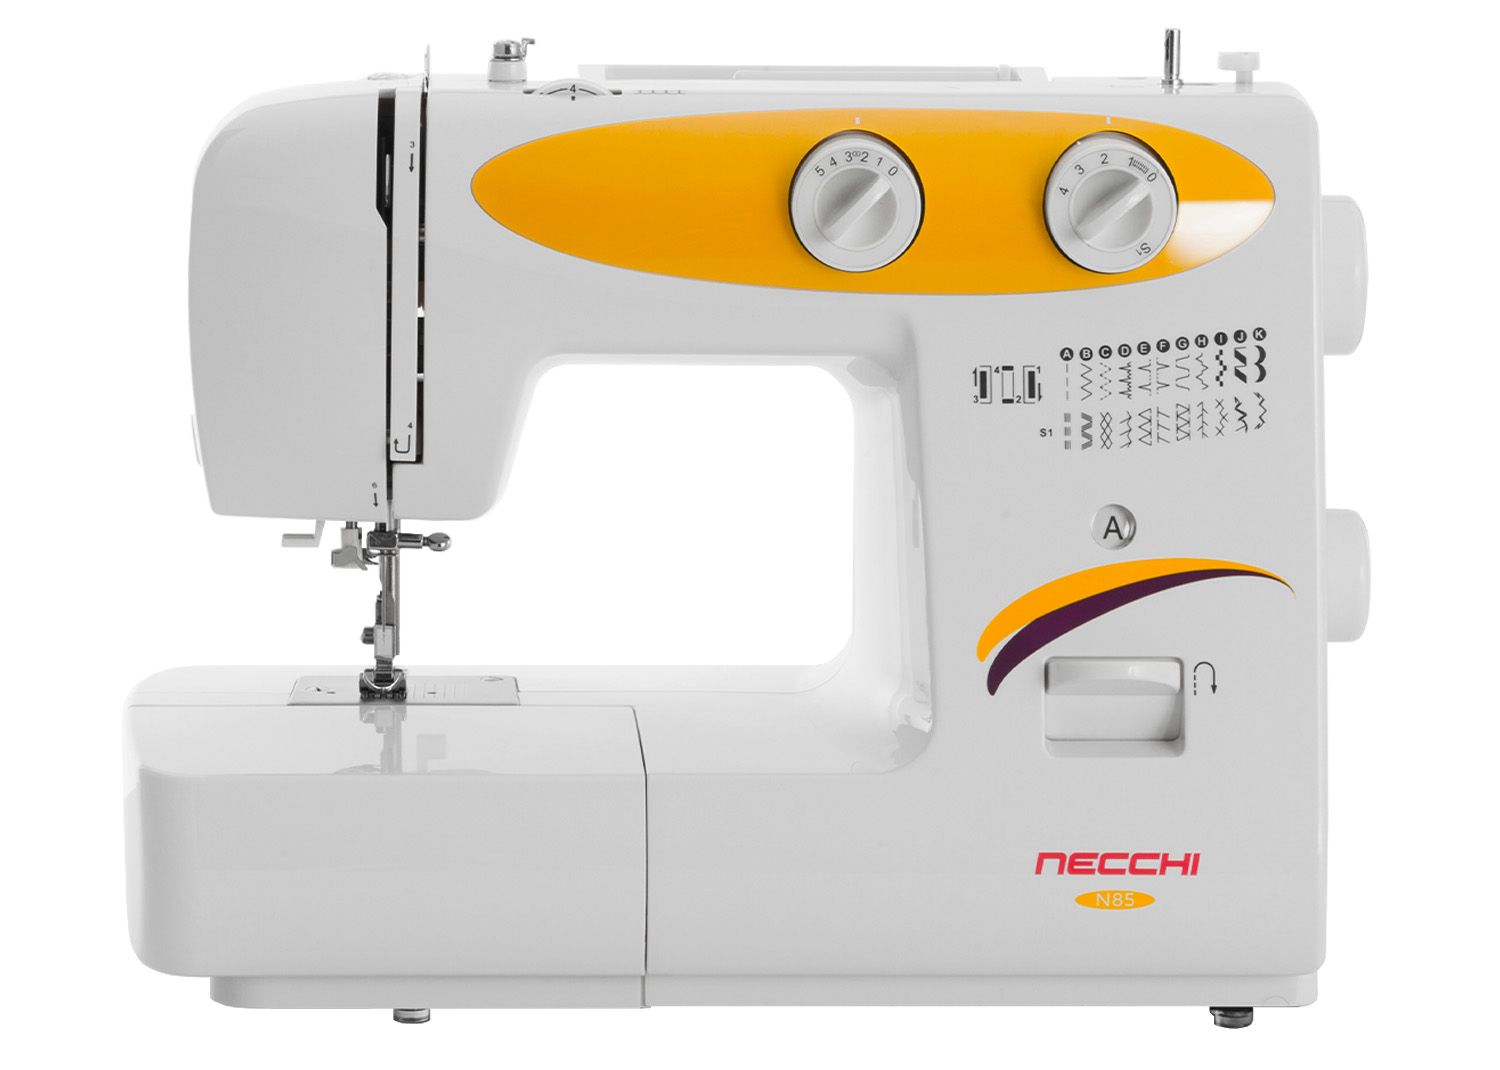 Macchine per cucire - Necchi N85 - Necchi Shop Online